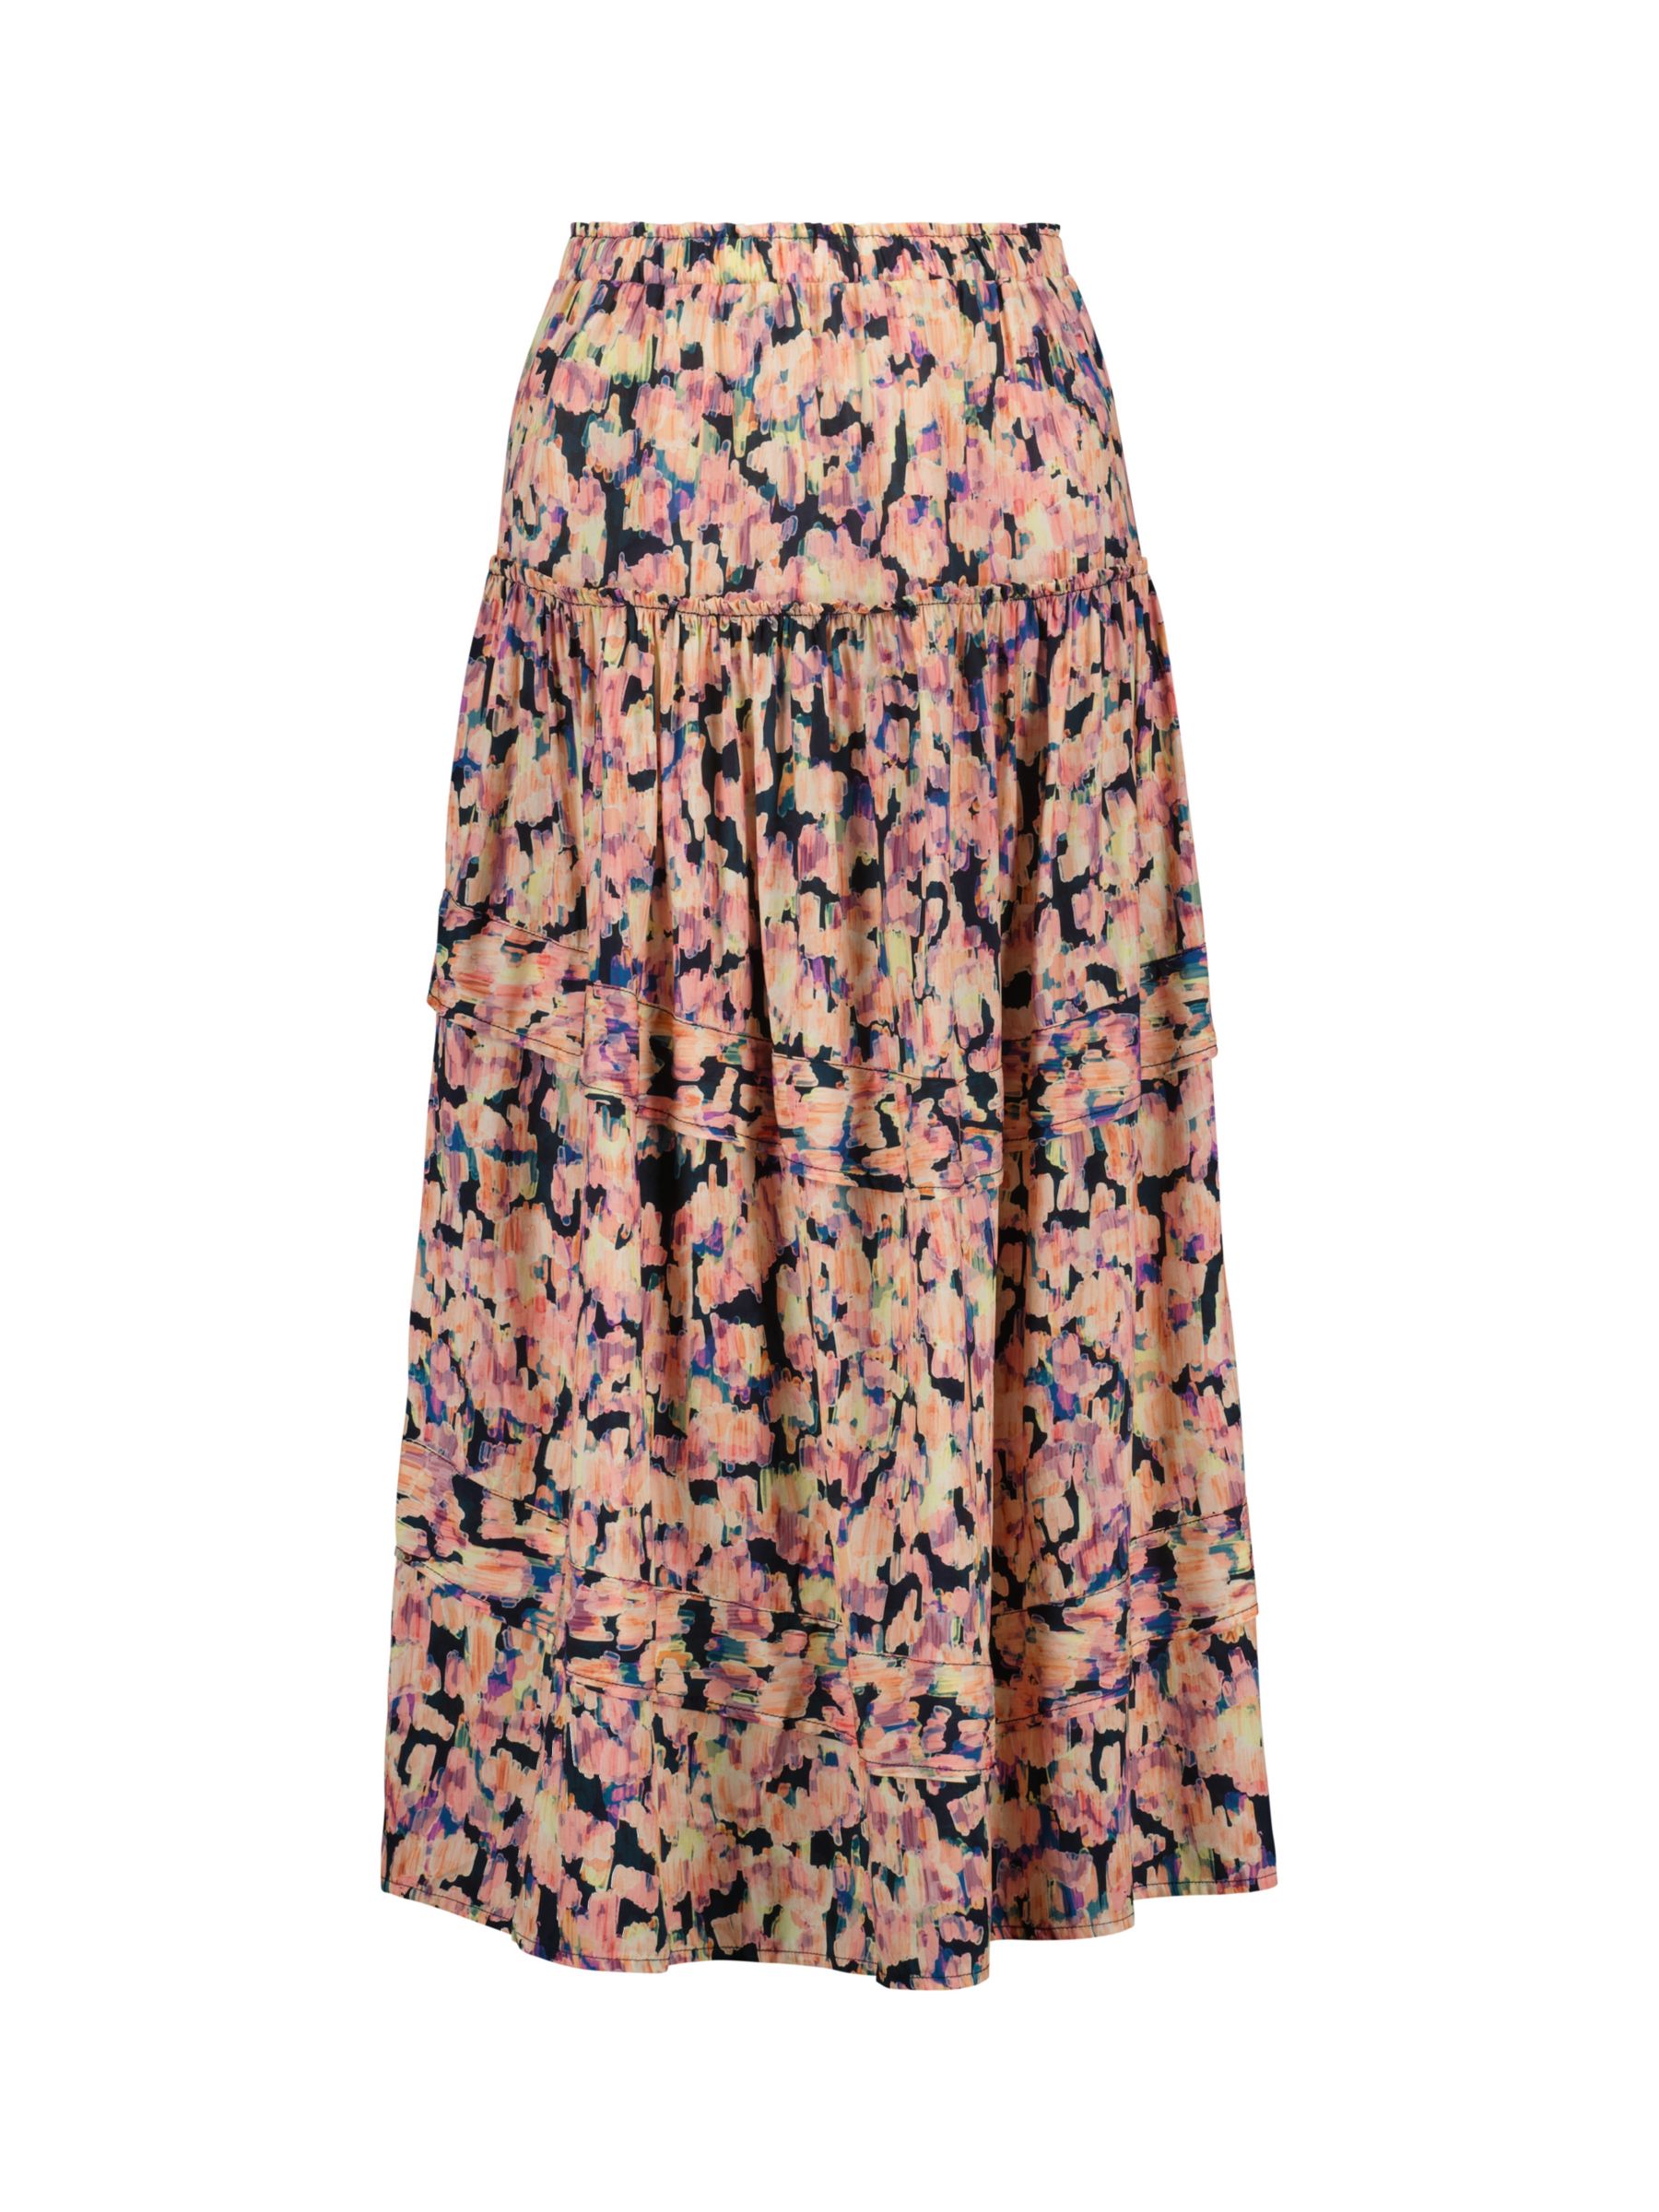 Baukjen Stefania Blurred Print Midi Skirt, Pink/Multi at John Lewis ...